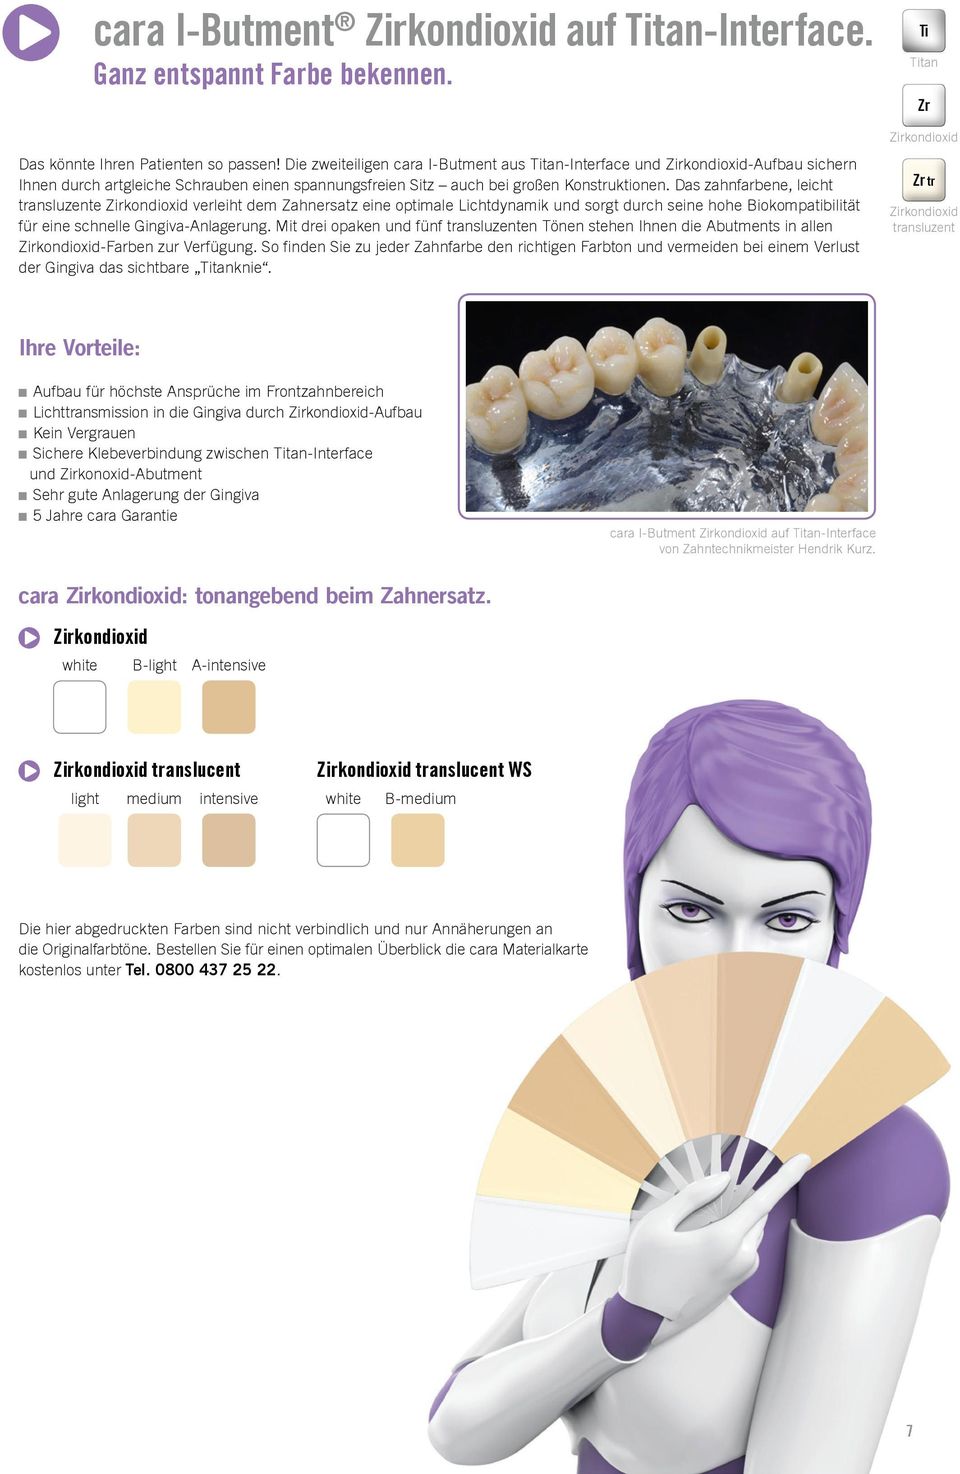 Das zahnfarbene, leicht transluzente Zirkondioxid verleiht dem Zahnersatz eine optimale Lichtdynamik und sorgt durch seine hohe Biokompatibilität für eine schnelle Gingiva-Anlagerung.